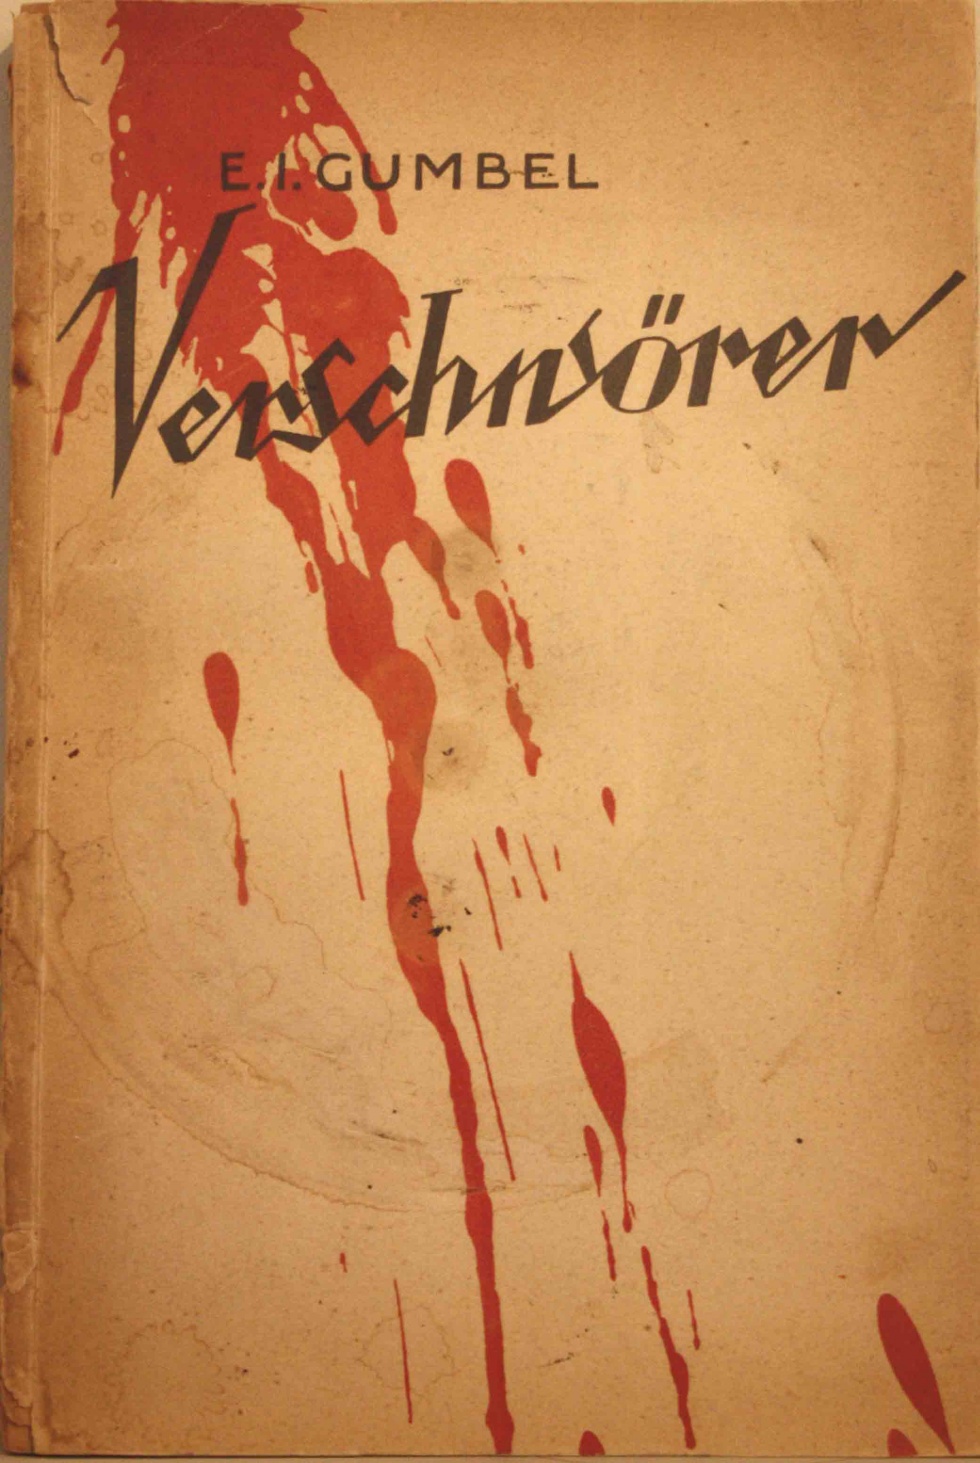 E.I. Gumbel: &quot;Verschwörer&quot;, 1924 (Kurt Tucholsky Literaturmuseum CC BY-NC-SA)